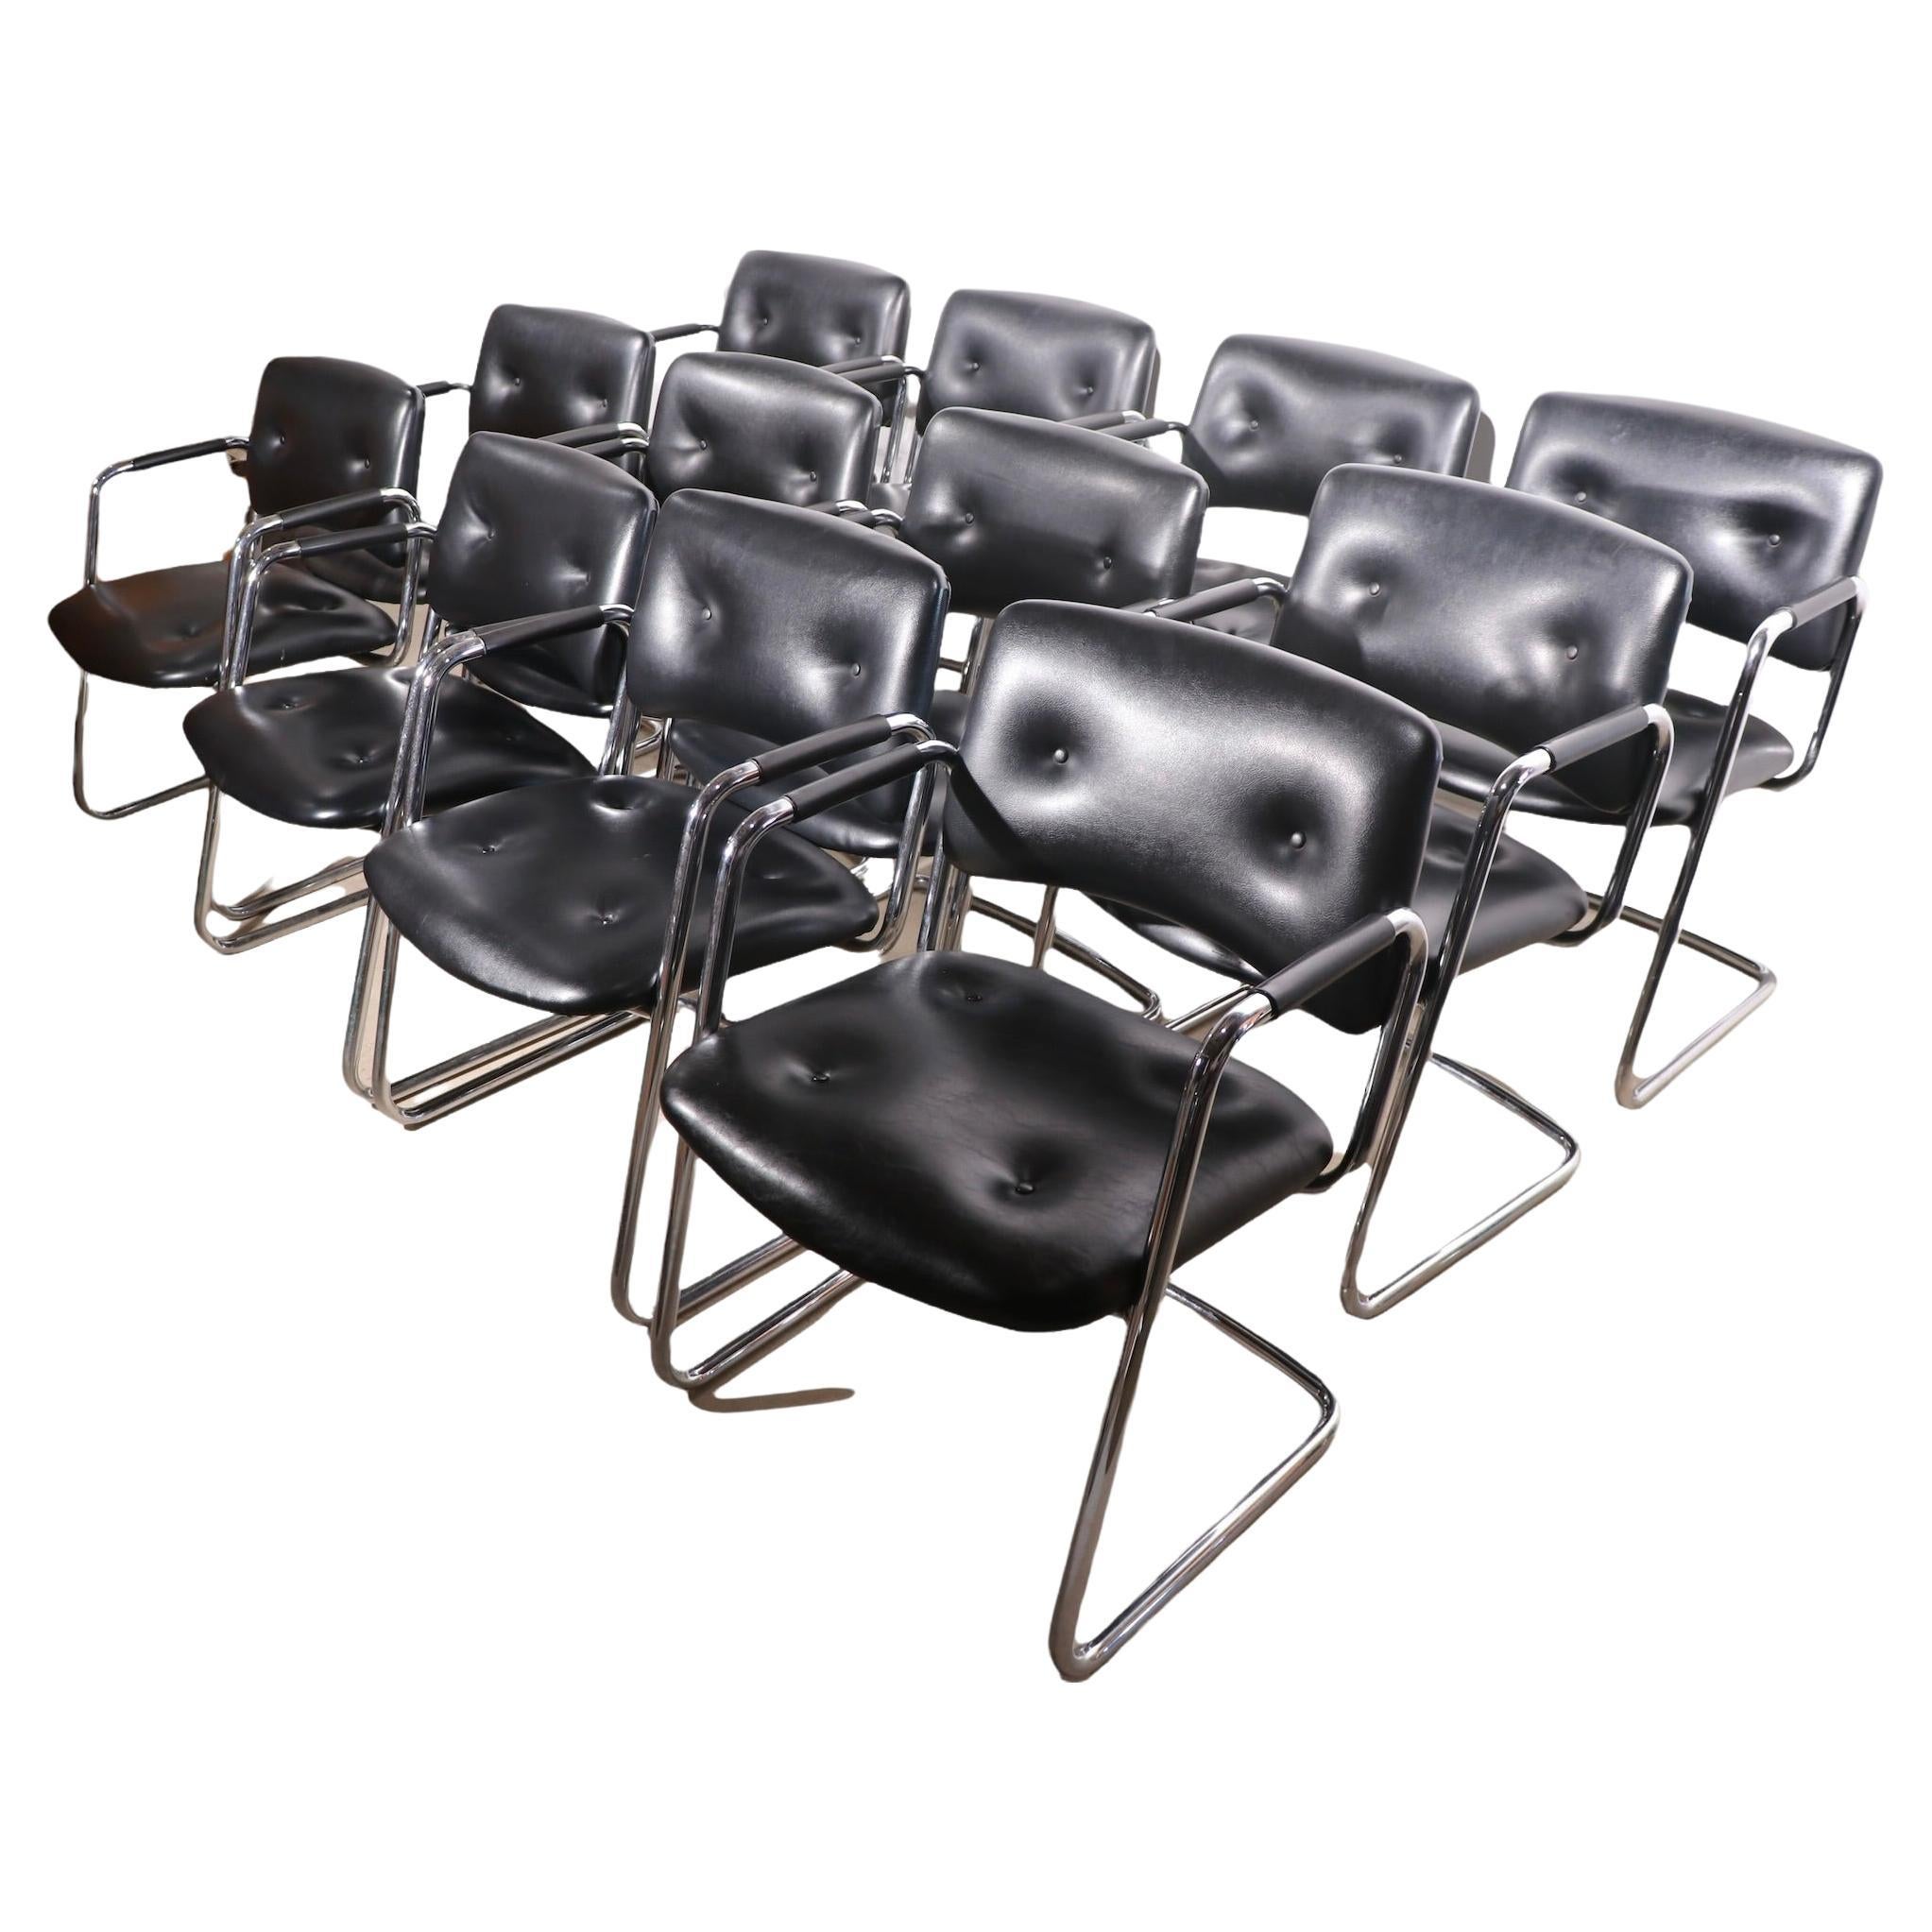 Ensemble de 12 fauteuils en porte-à-faux Steelcase chromés et noirs, modèle 421-482